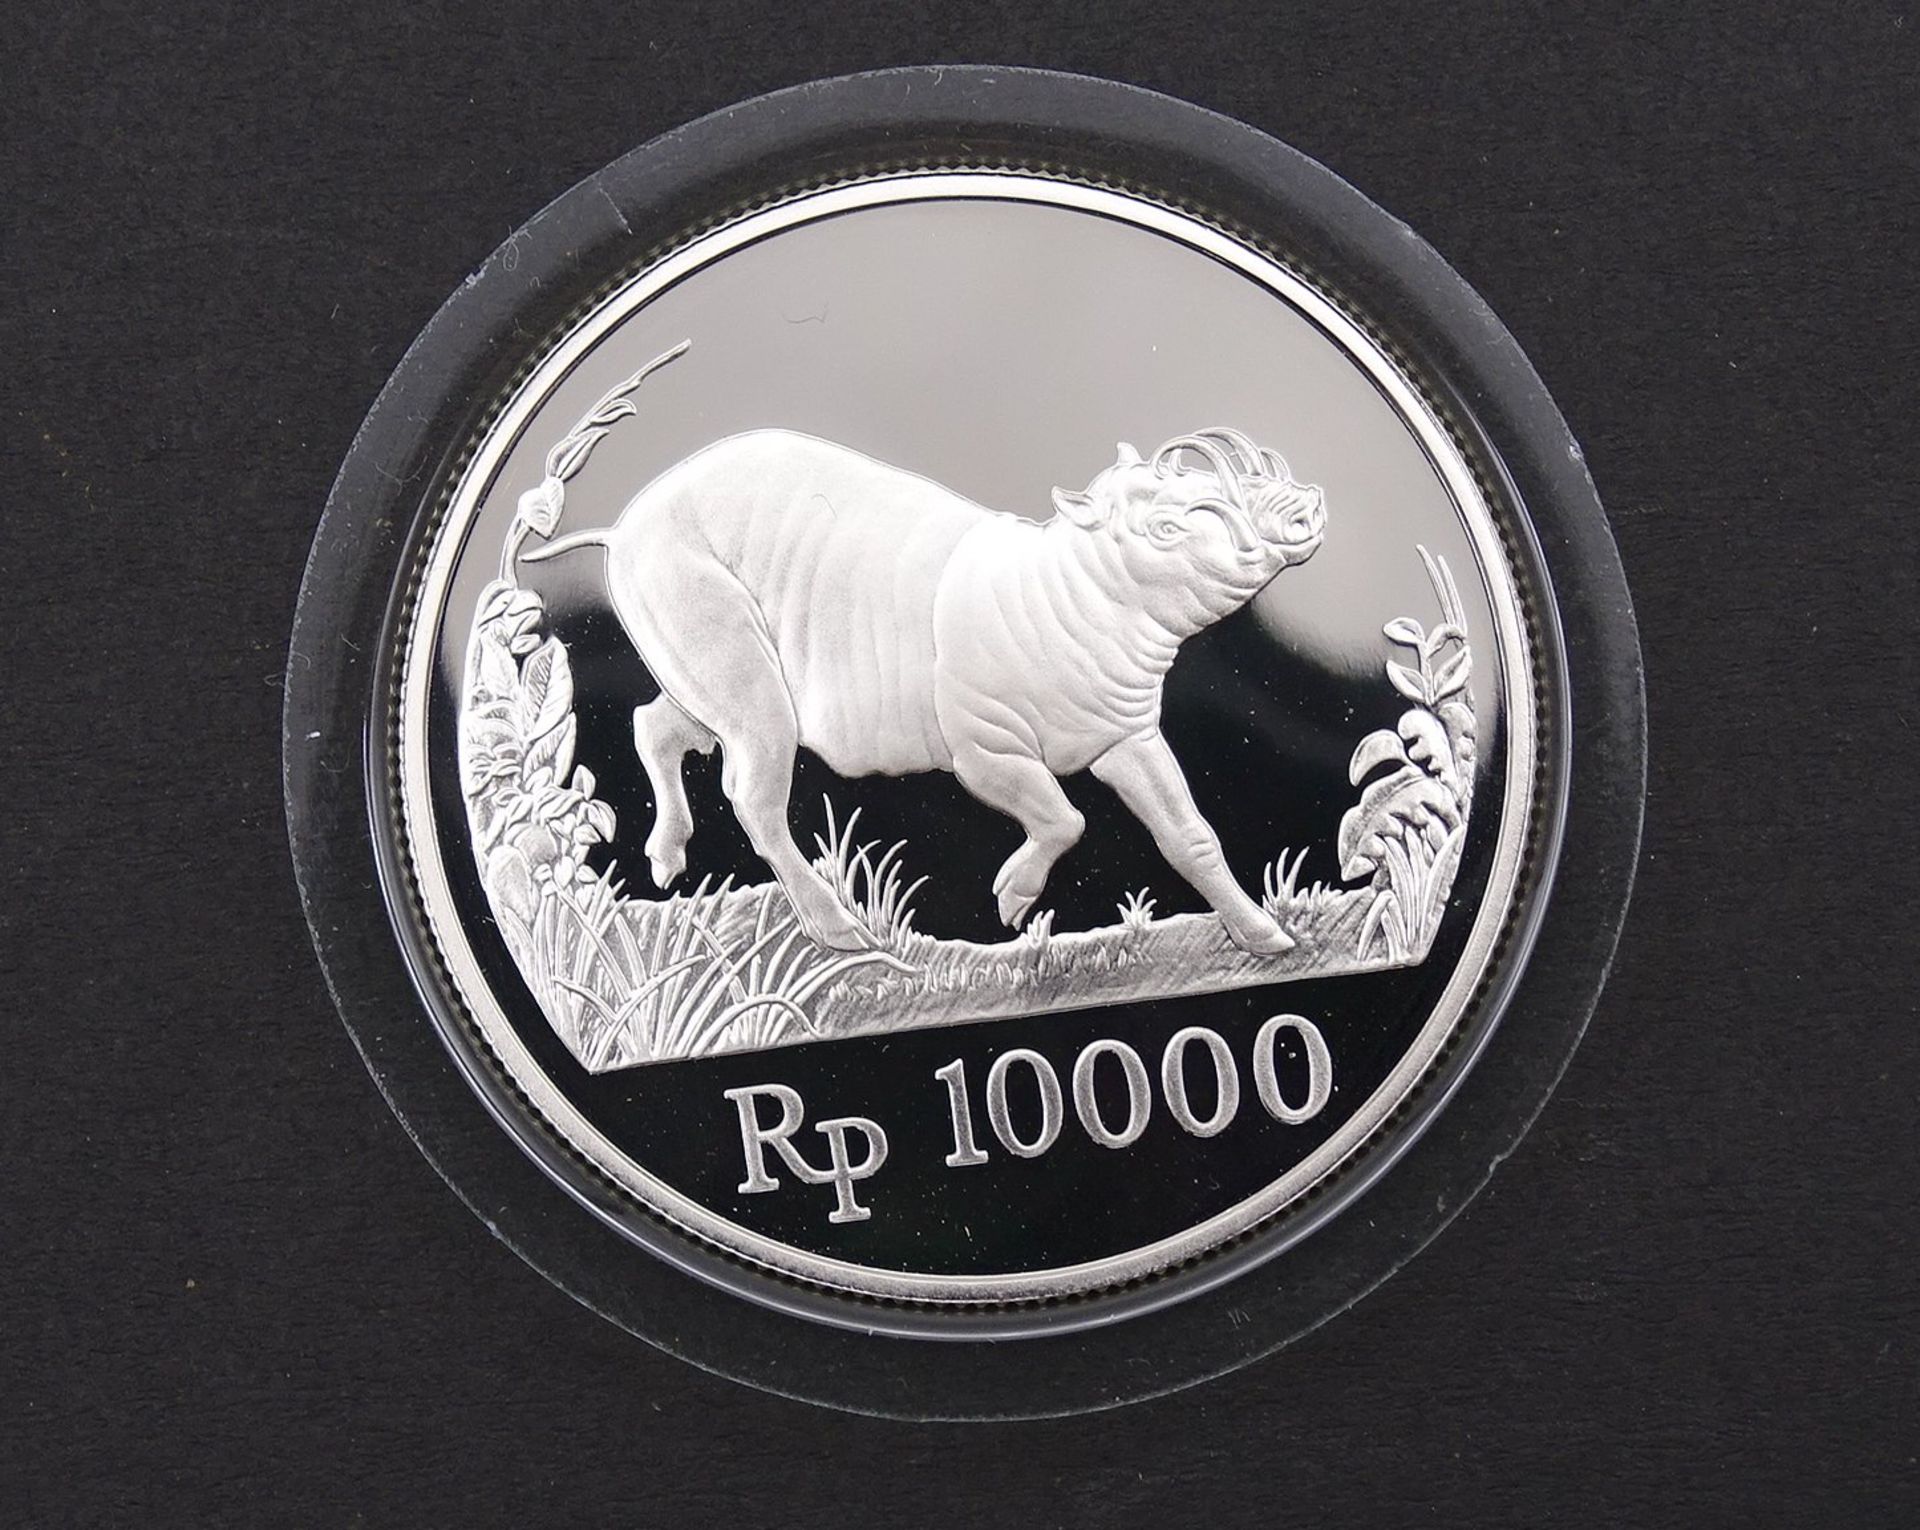 Silbermünze Rp 10000 , 1987 Bank Indonesia,19,4g. Silber 0.925, gekapselt